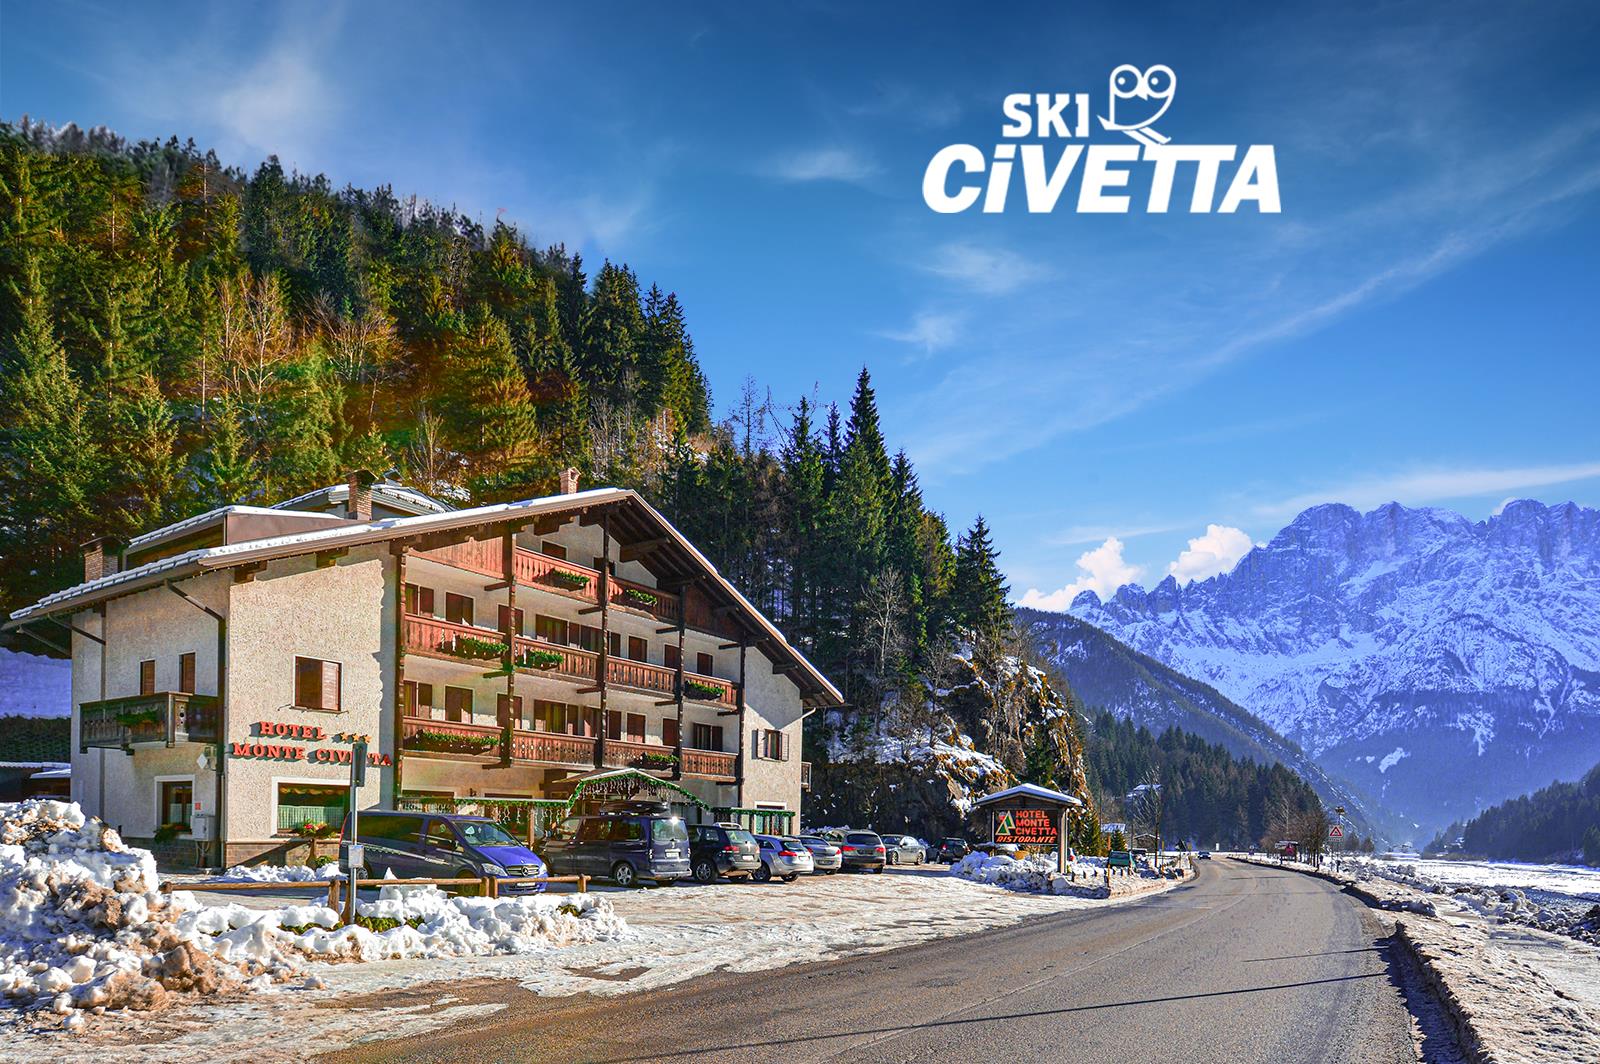 5denní zájezd s dopravou, polopenzí a skipasem v ceně – hotel Monte Civetta***